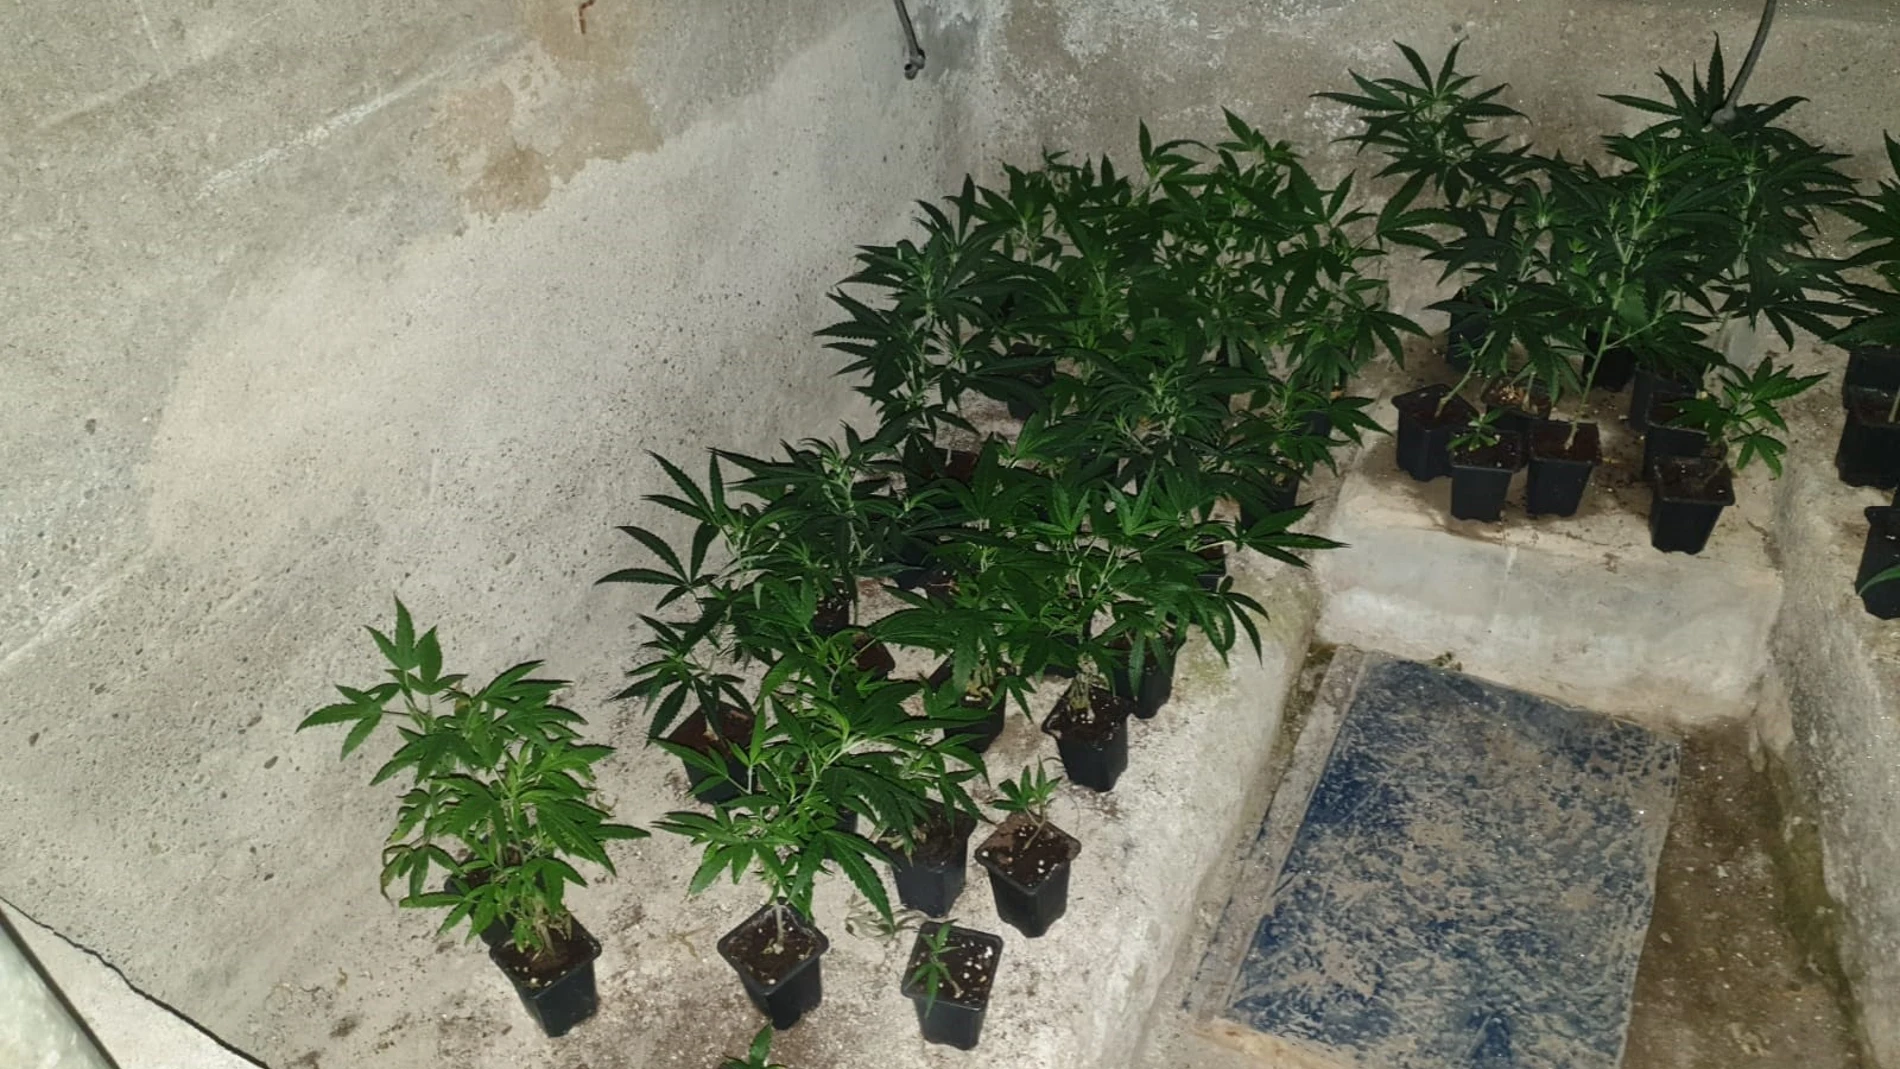 Algunas de las plantas de marihuana localizadas por los Mossos d'Esquadra, la Guardia Civil y la Policía Nacional durante el operativo 'Delos'.MOSSOS D'ESQUADRA